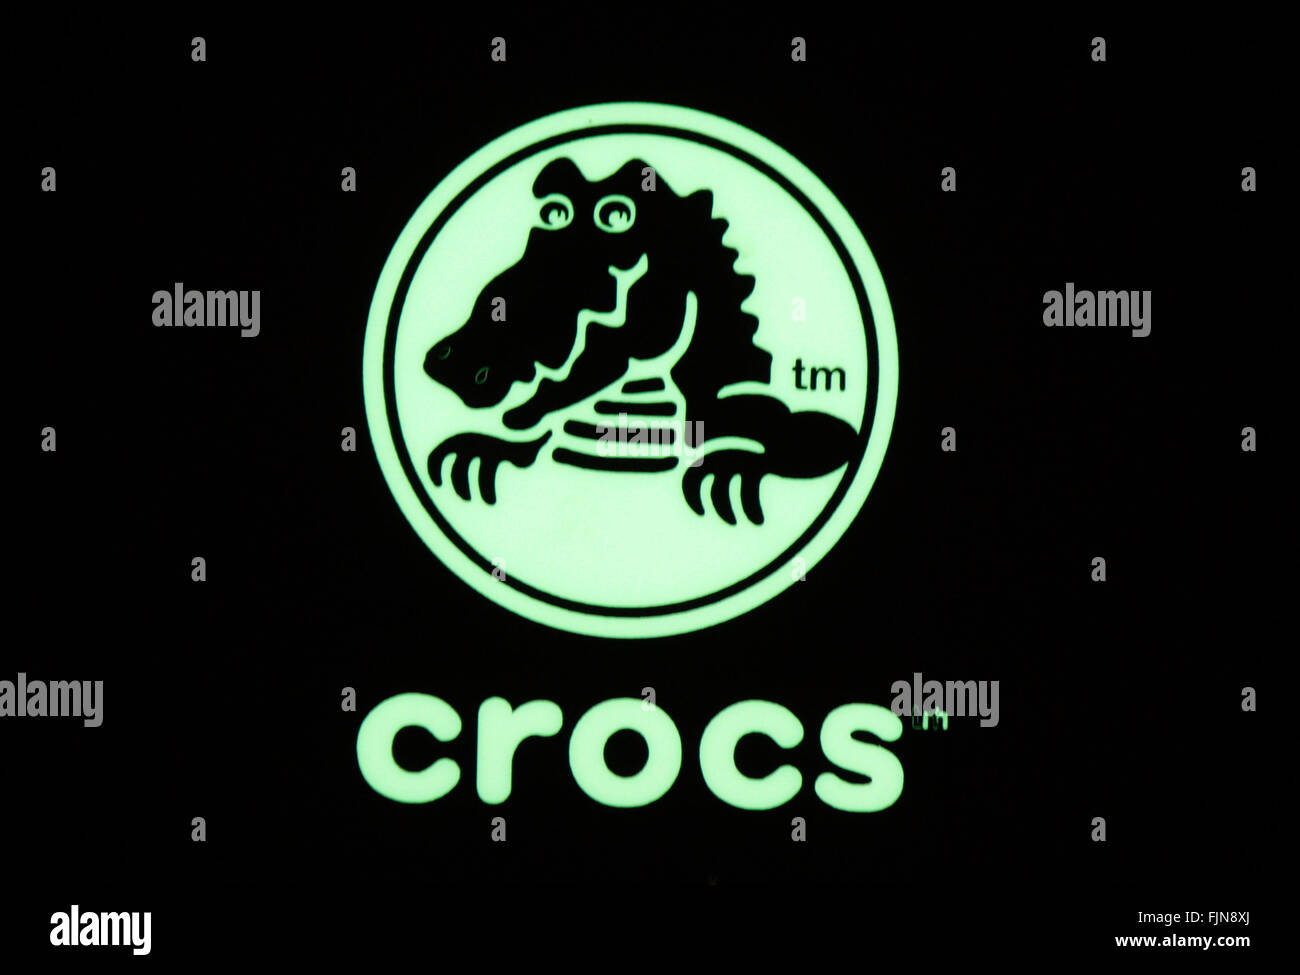 Crocs stock